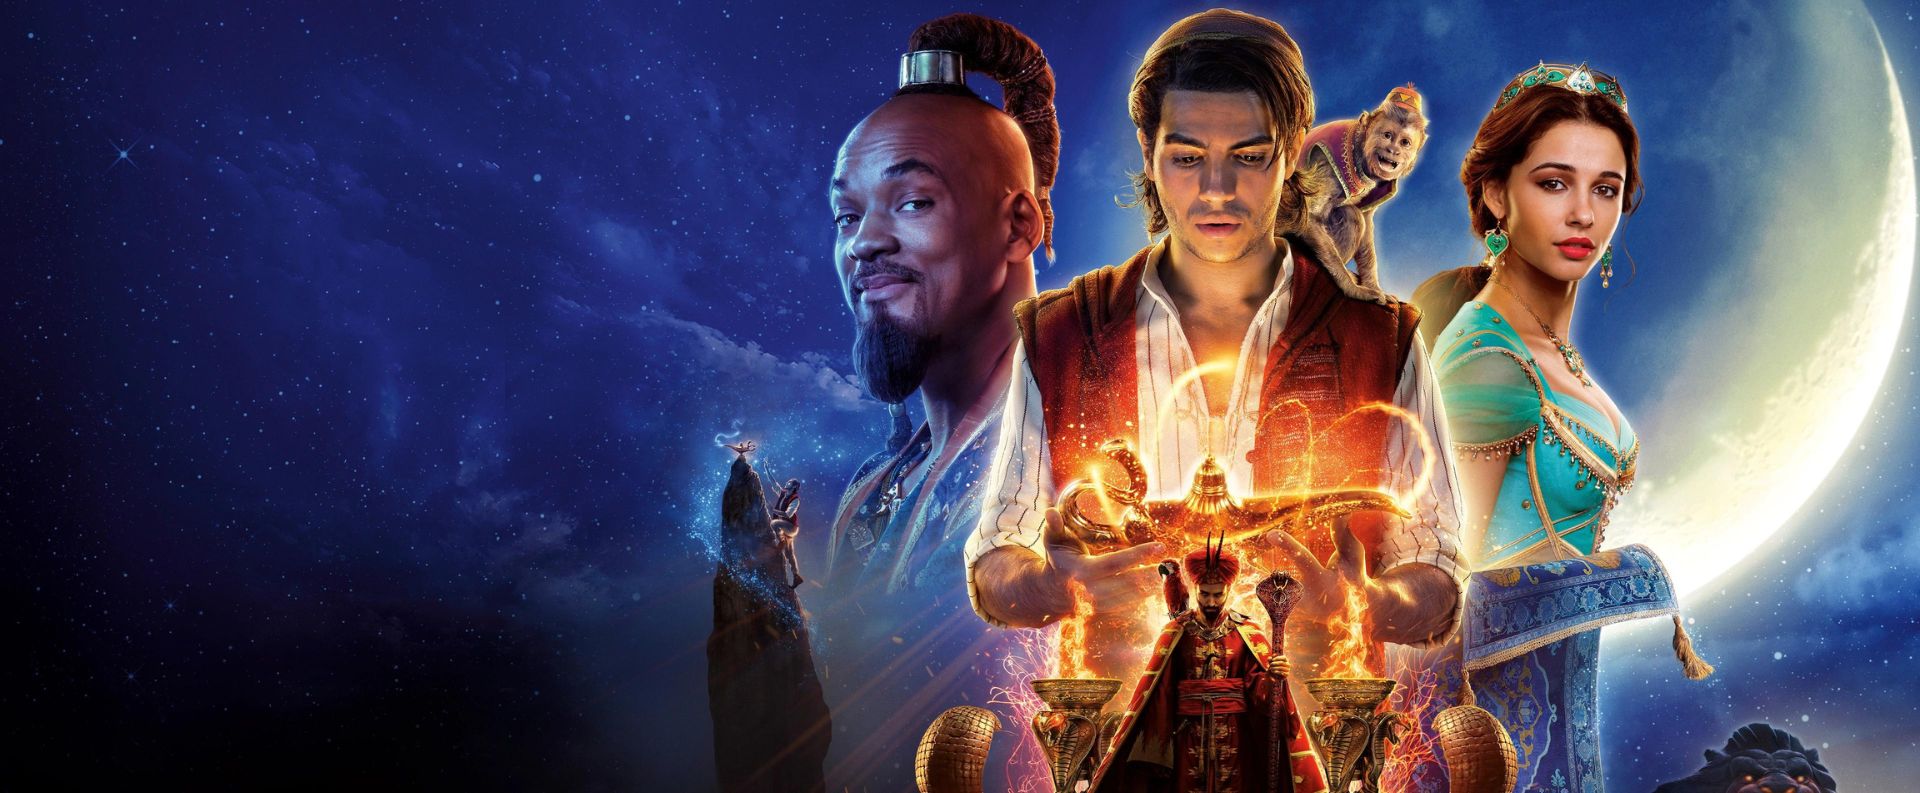 EZ Movie ดูหนังฟรี ไม่มีโฆษณา ภาพโลโก้ Aladdin (2019) อะลาดิน